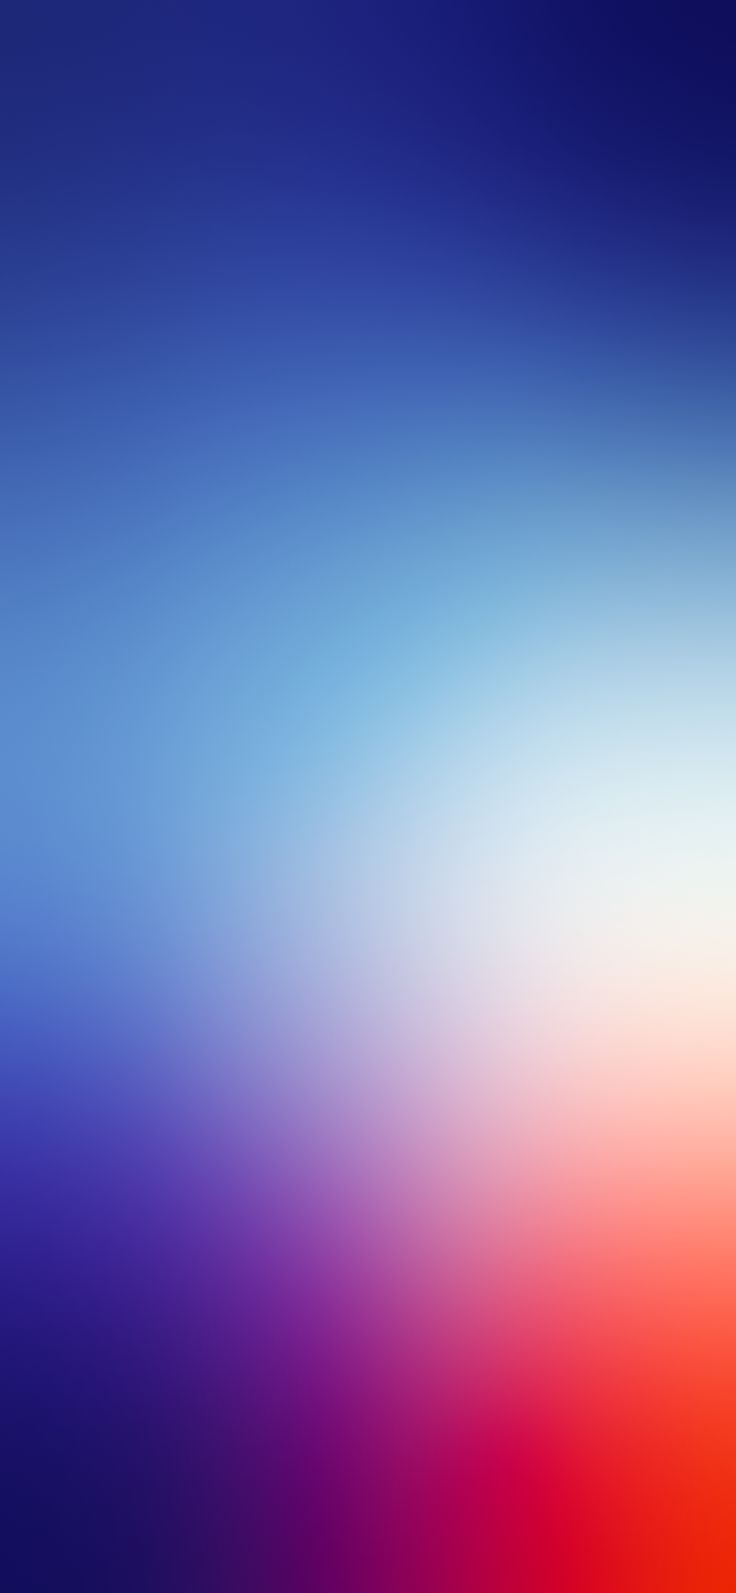 Blue to red gradient by EvgeniyZemelko. iPhone wallpaper blur, New wallpaper iphone, Htc wallpaper